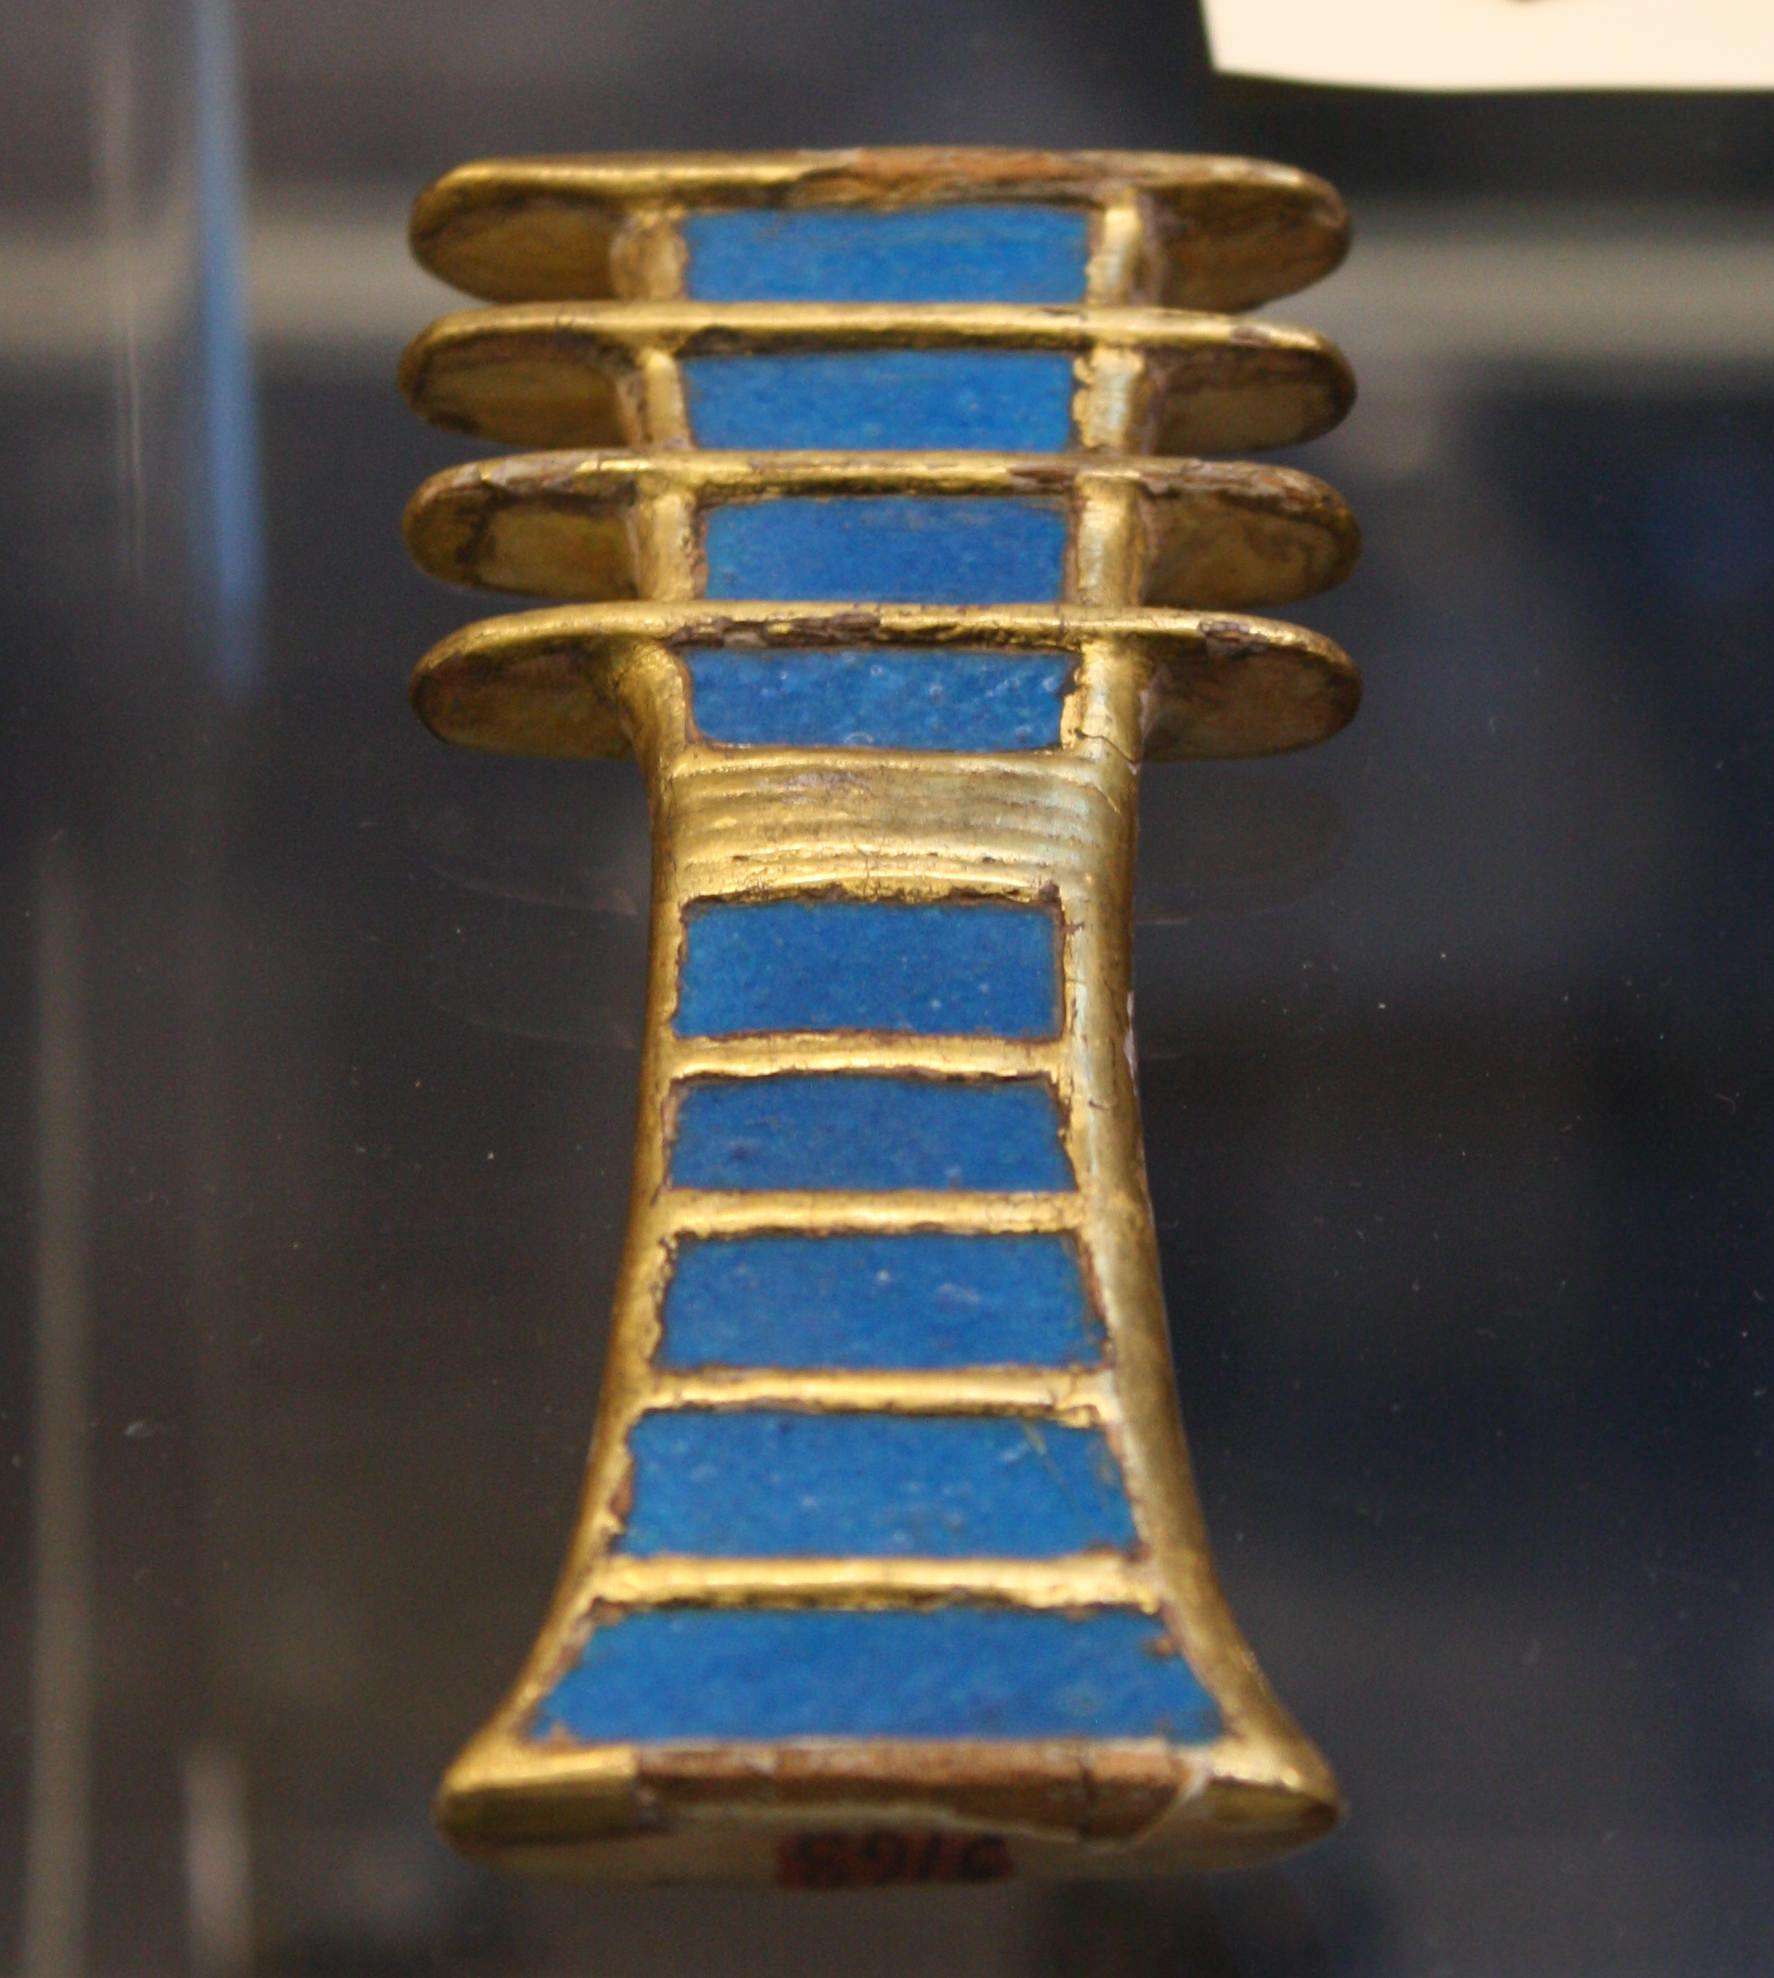 Amulet djed pren a faeth urddasol (symbol o sefydlogrwydd) o feddrod y Frenhines Nefertari. Brenhinllin XIX, 1279-1213 BCE. (Amgueddfa'r Aifft, Turin)